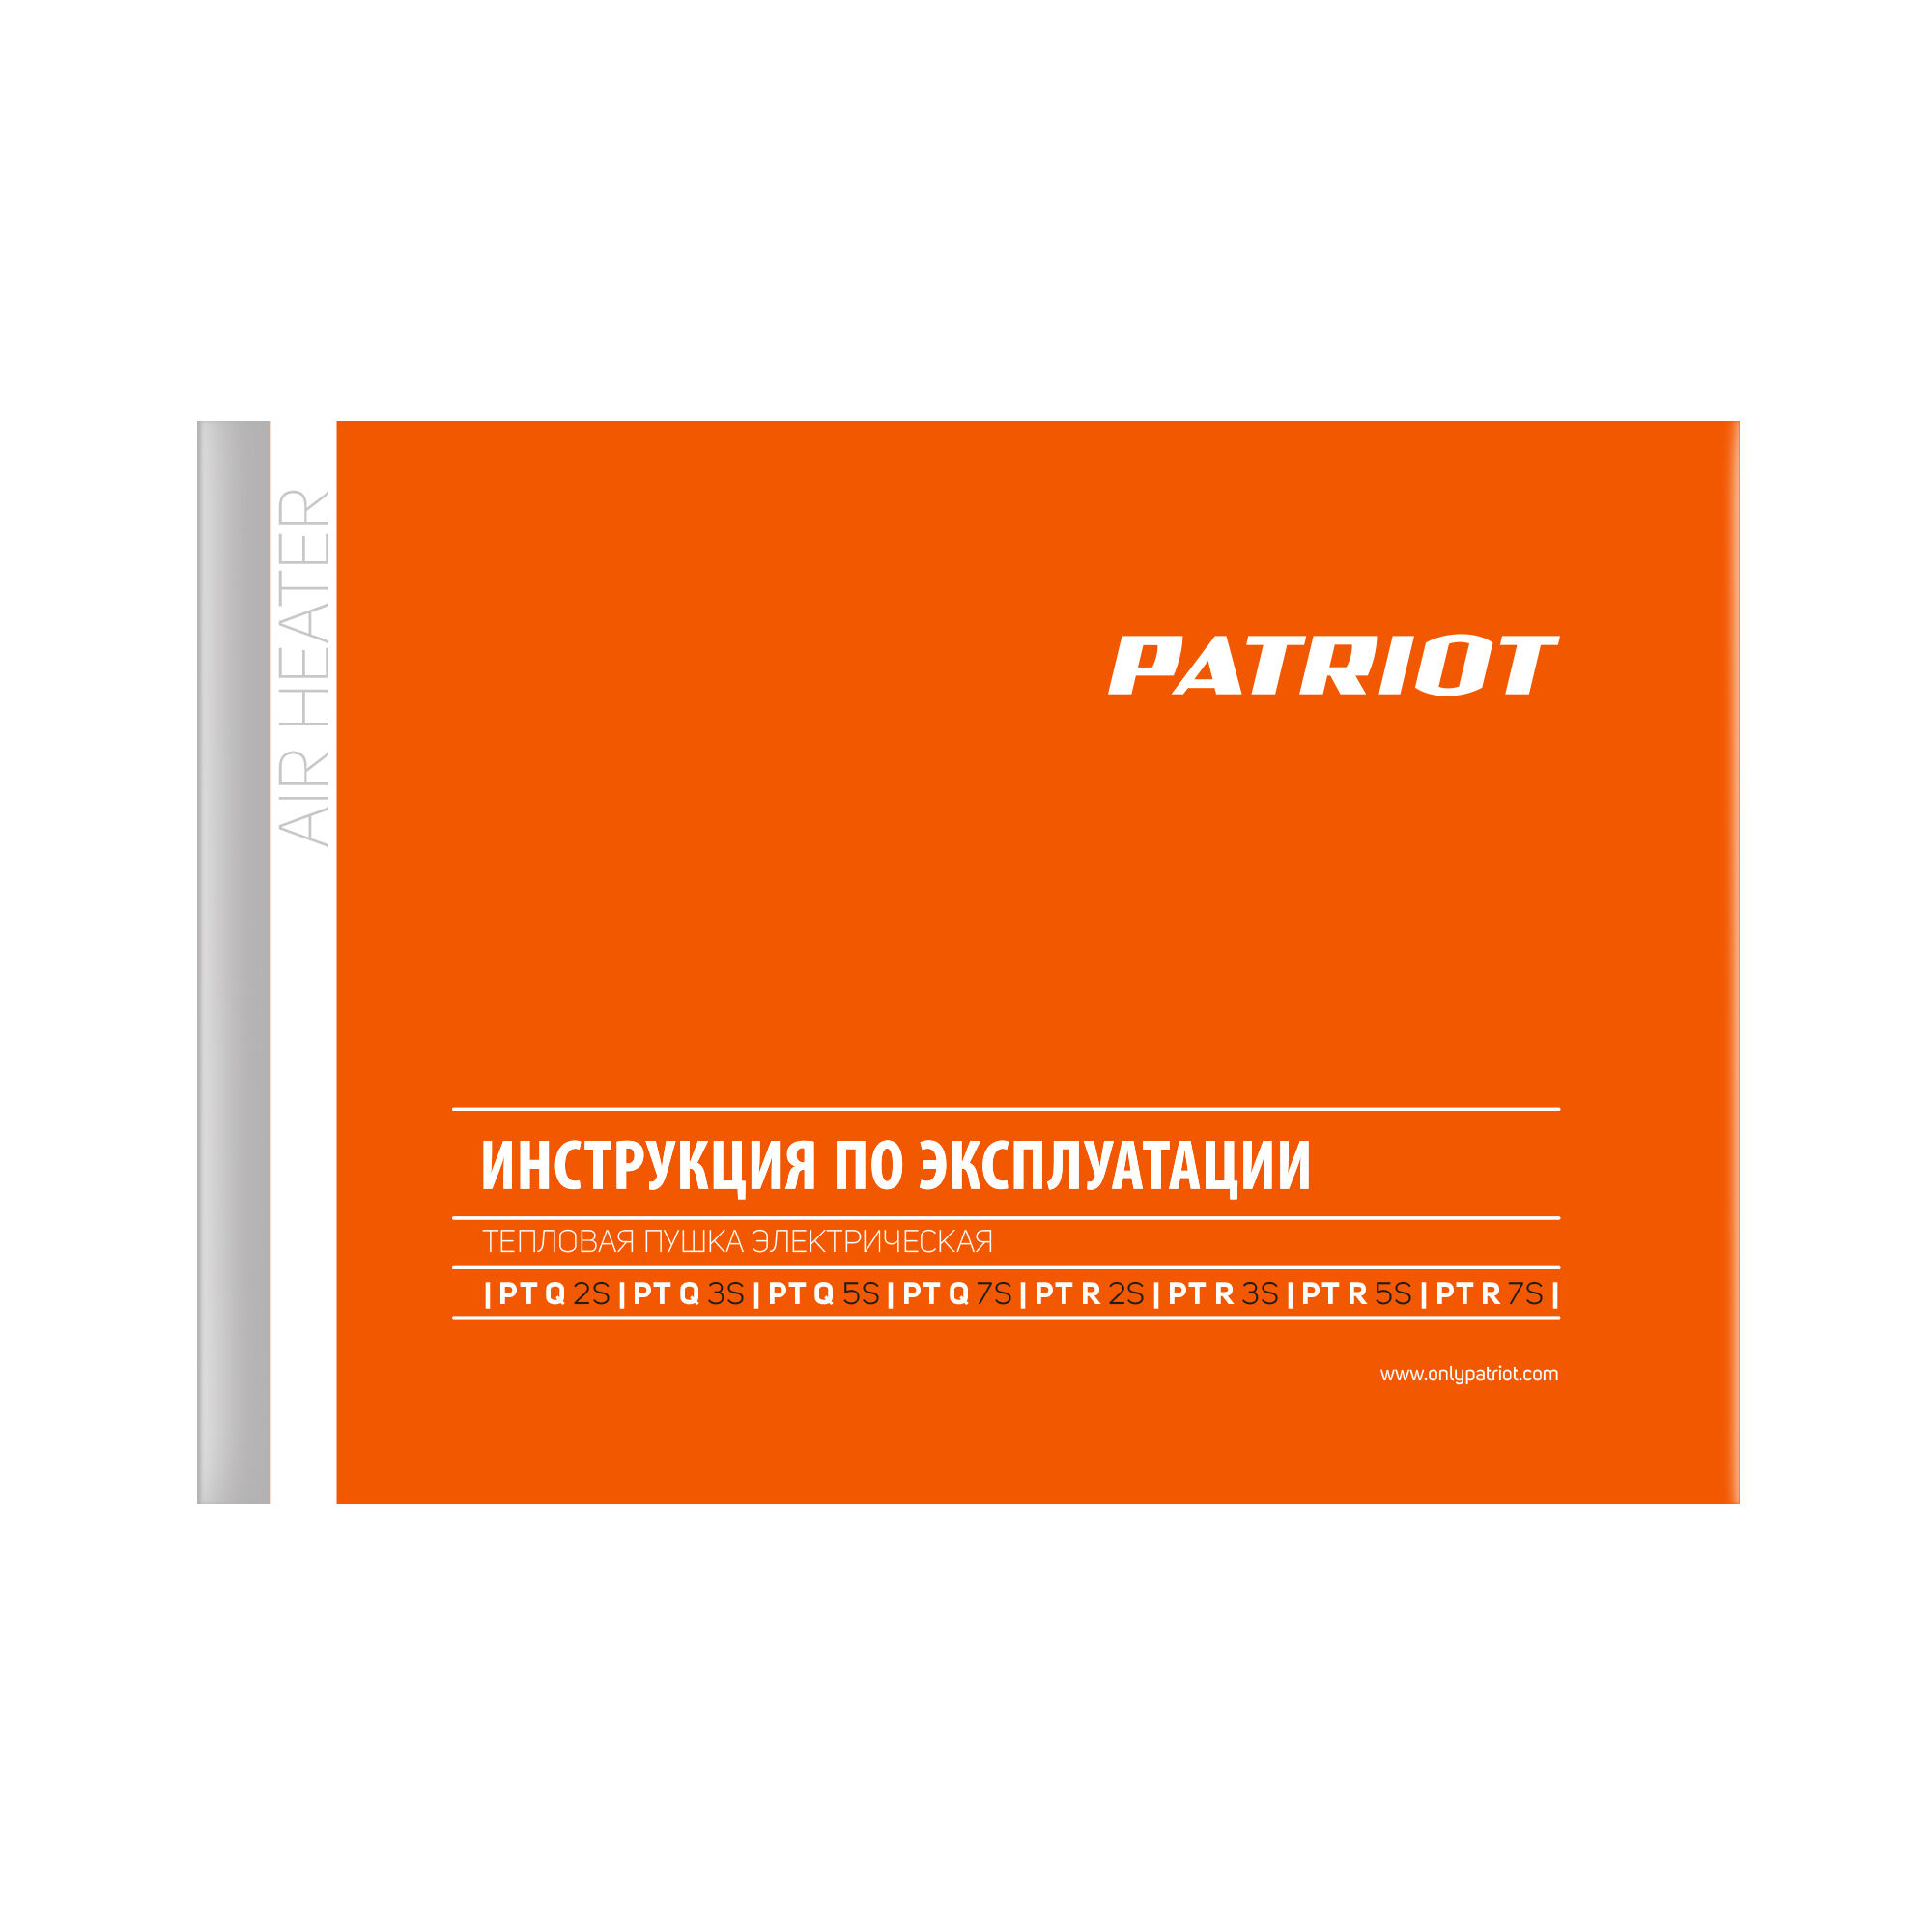 Тепловентилятор электрический PATRIOT PTR 5S, 3.0 кВт, 220В, терморегулятор, керамический нагревательный элемент PTC, шн 10